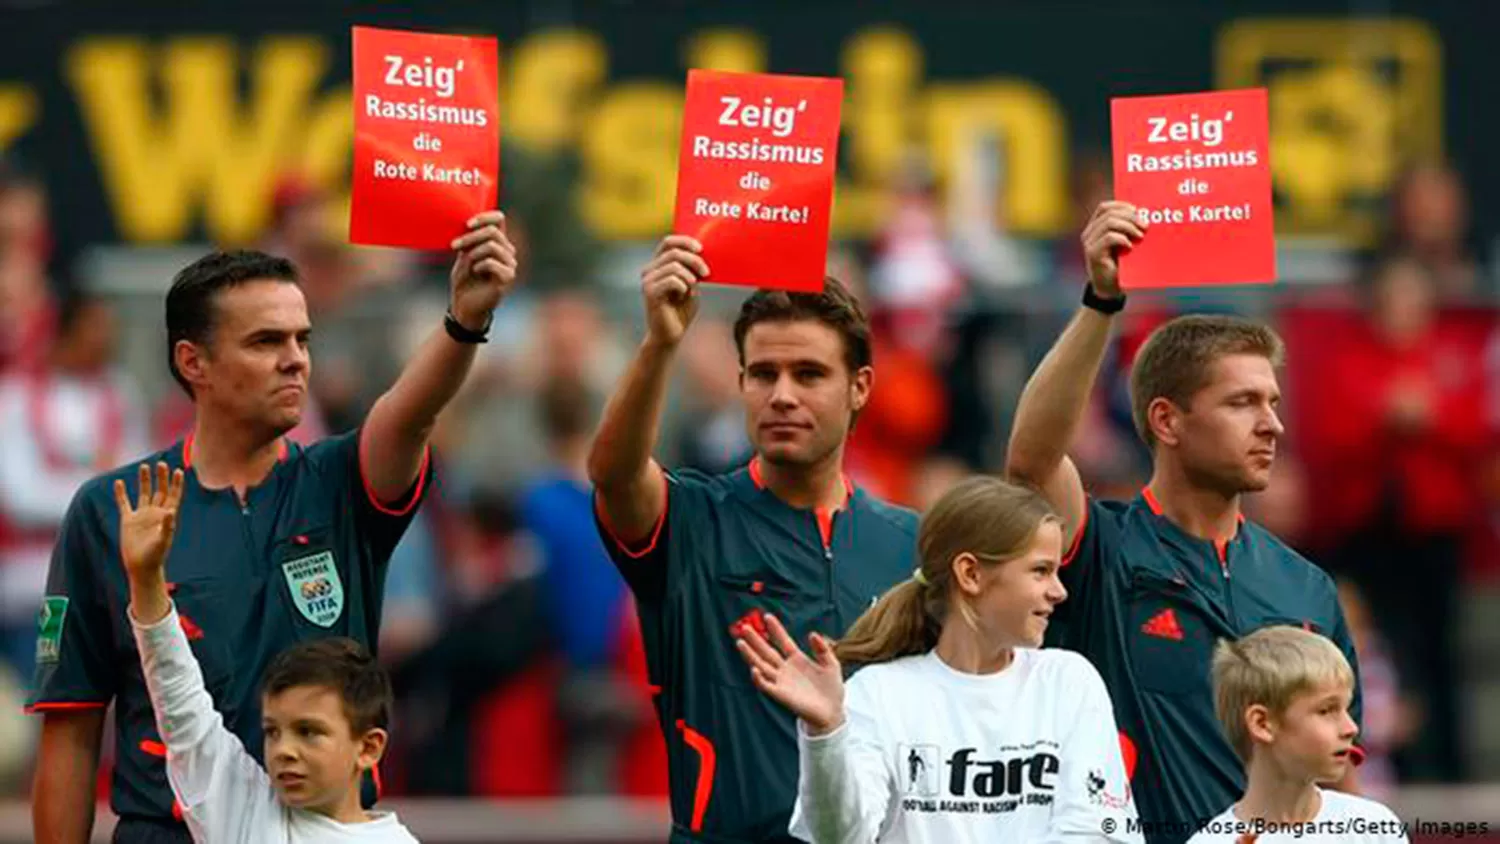 La Bundesliga le muestra la tarjeta roja al racismo / FOTO DW.COM